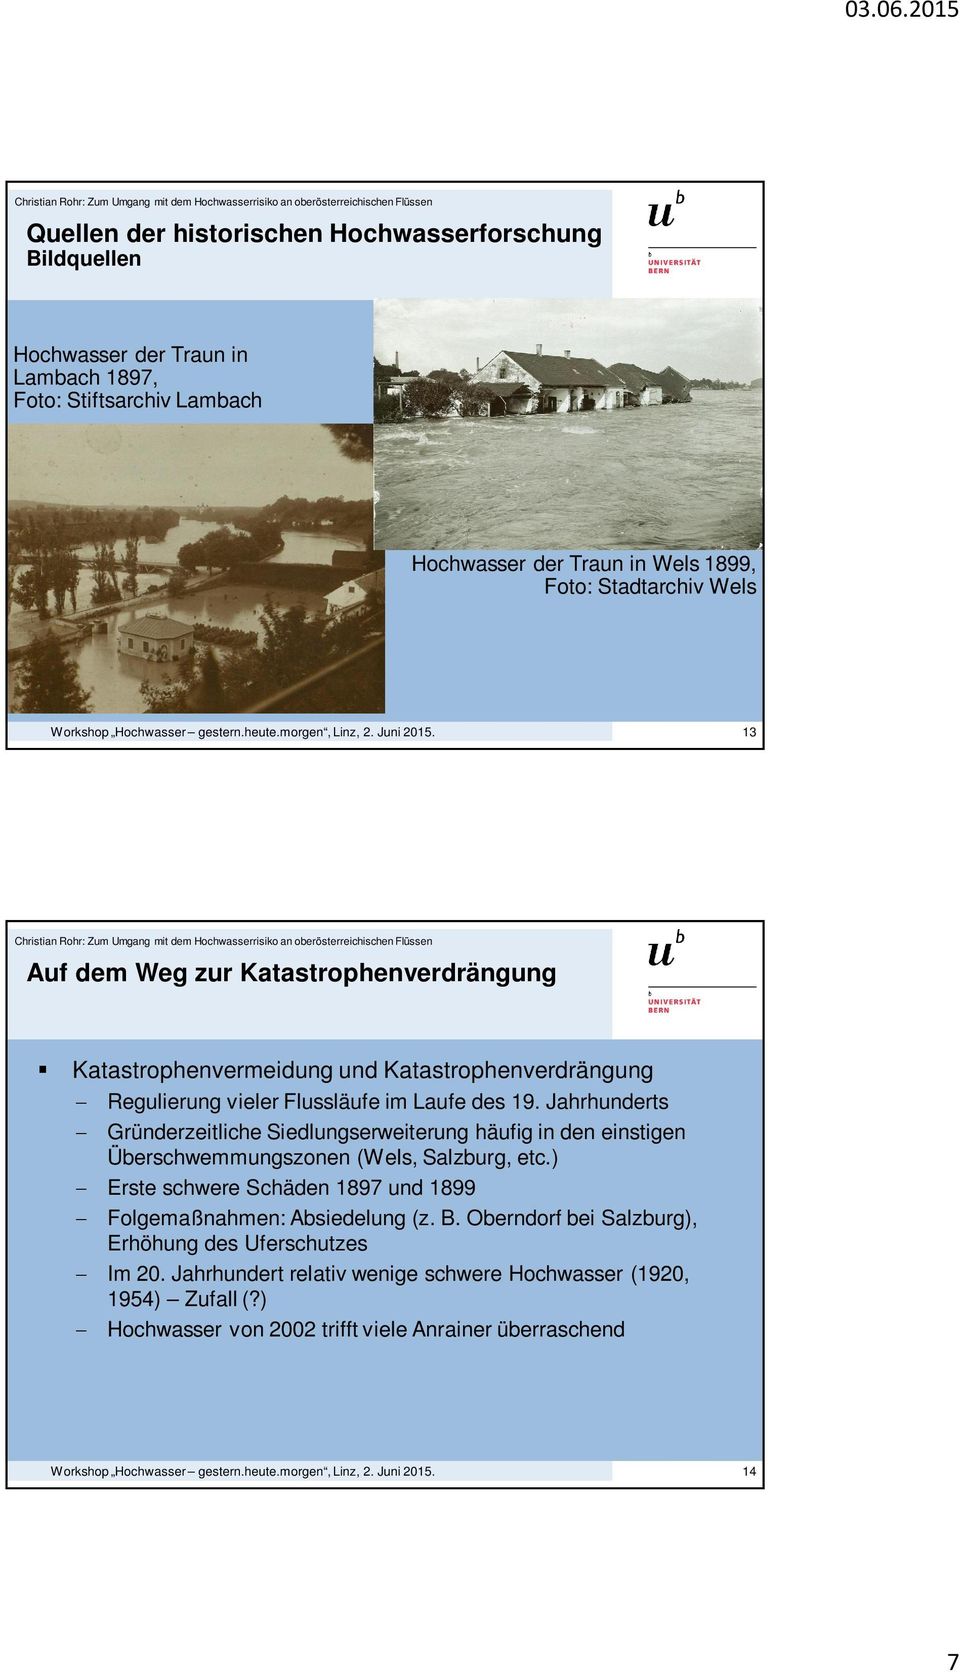 Jahrhunderts Gründerzeitliche Siedlungserweiterung häufig in den einstigen Überschwemmungszonen (Wels, Salzburg, etc.